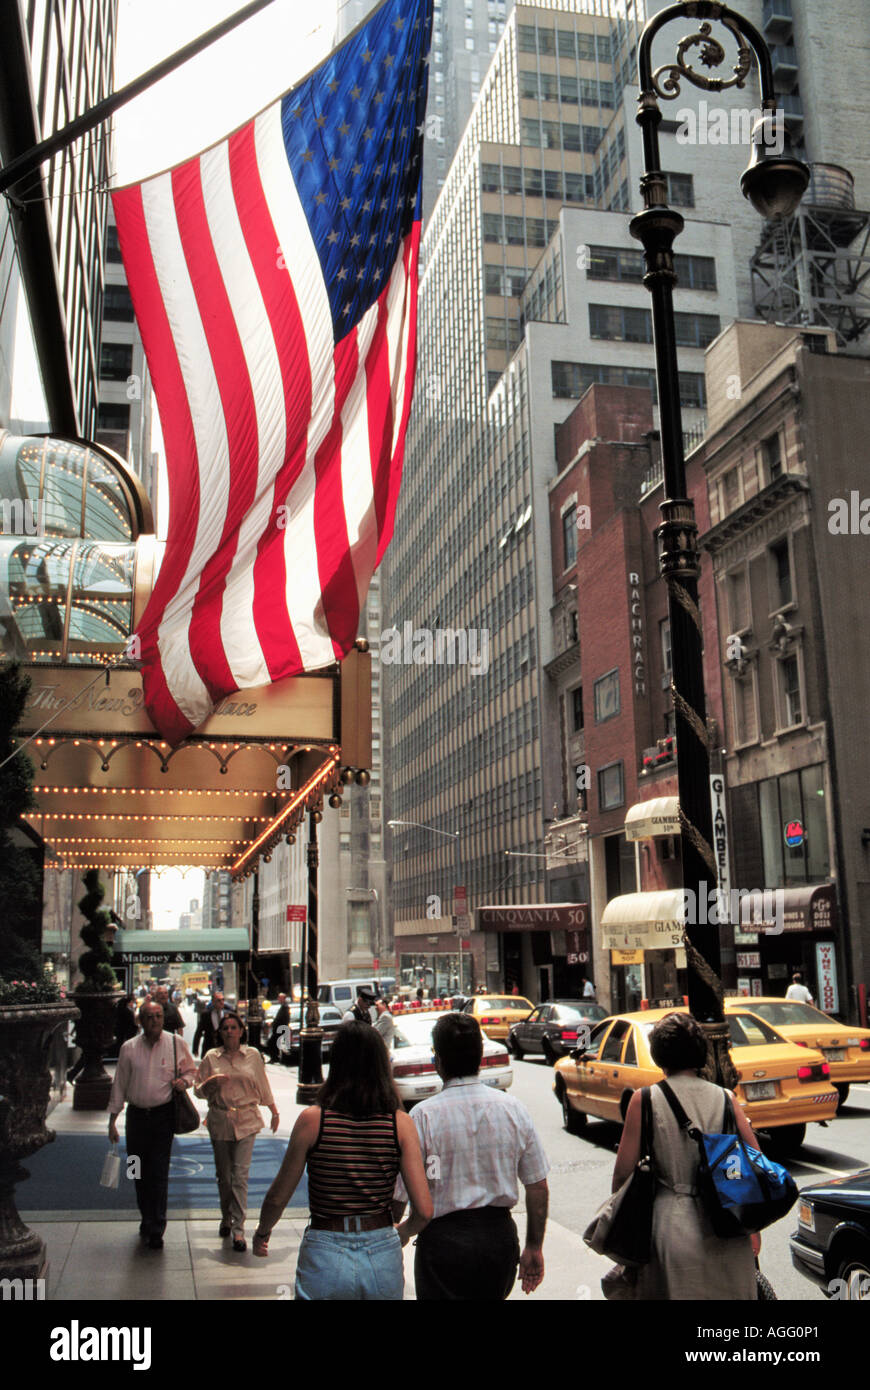 Scène de rue avec le drapeau américain, New York, USA Banque D'Images